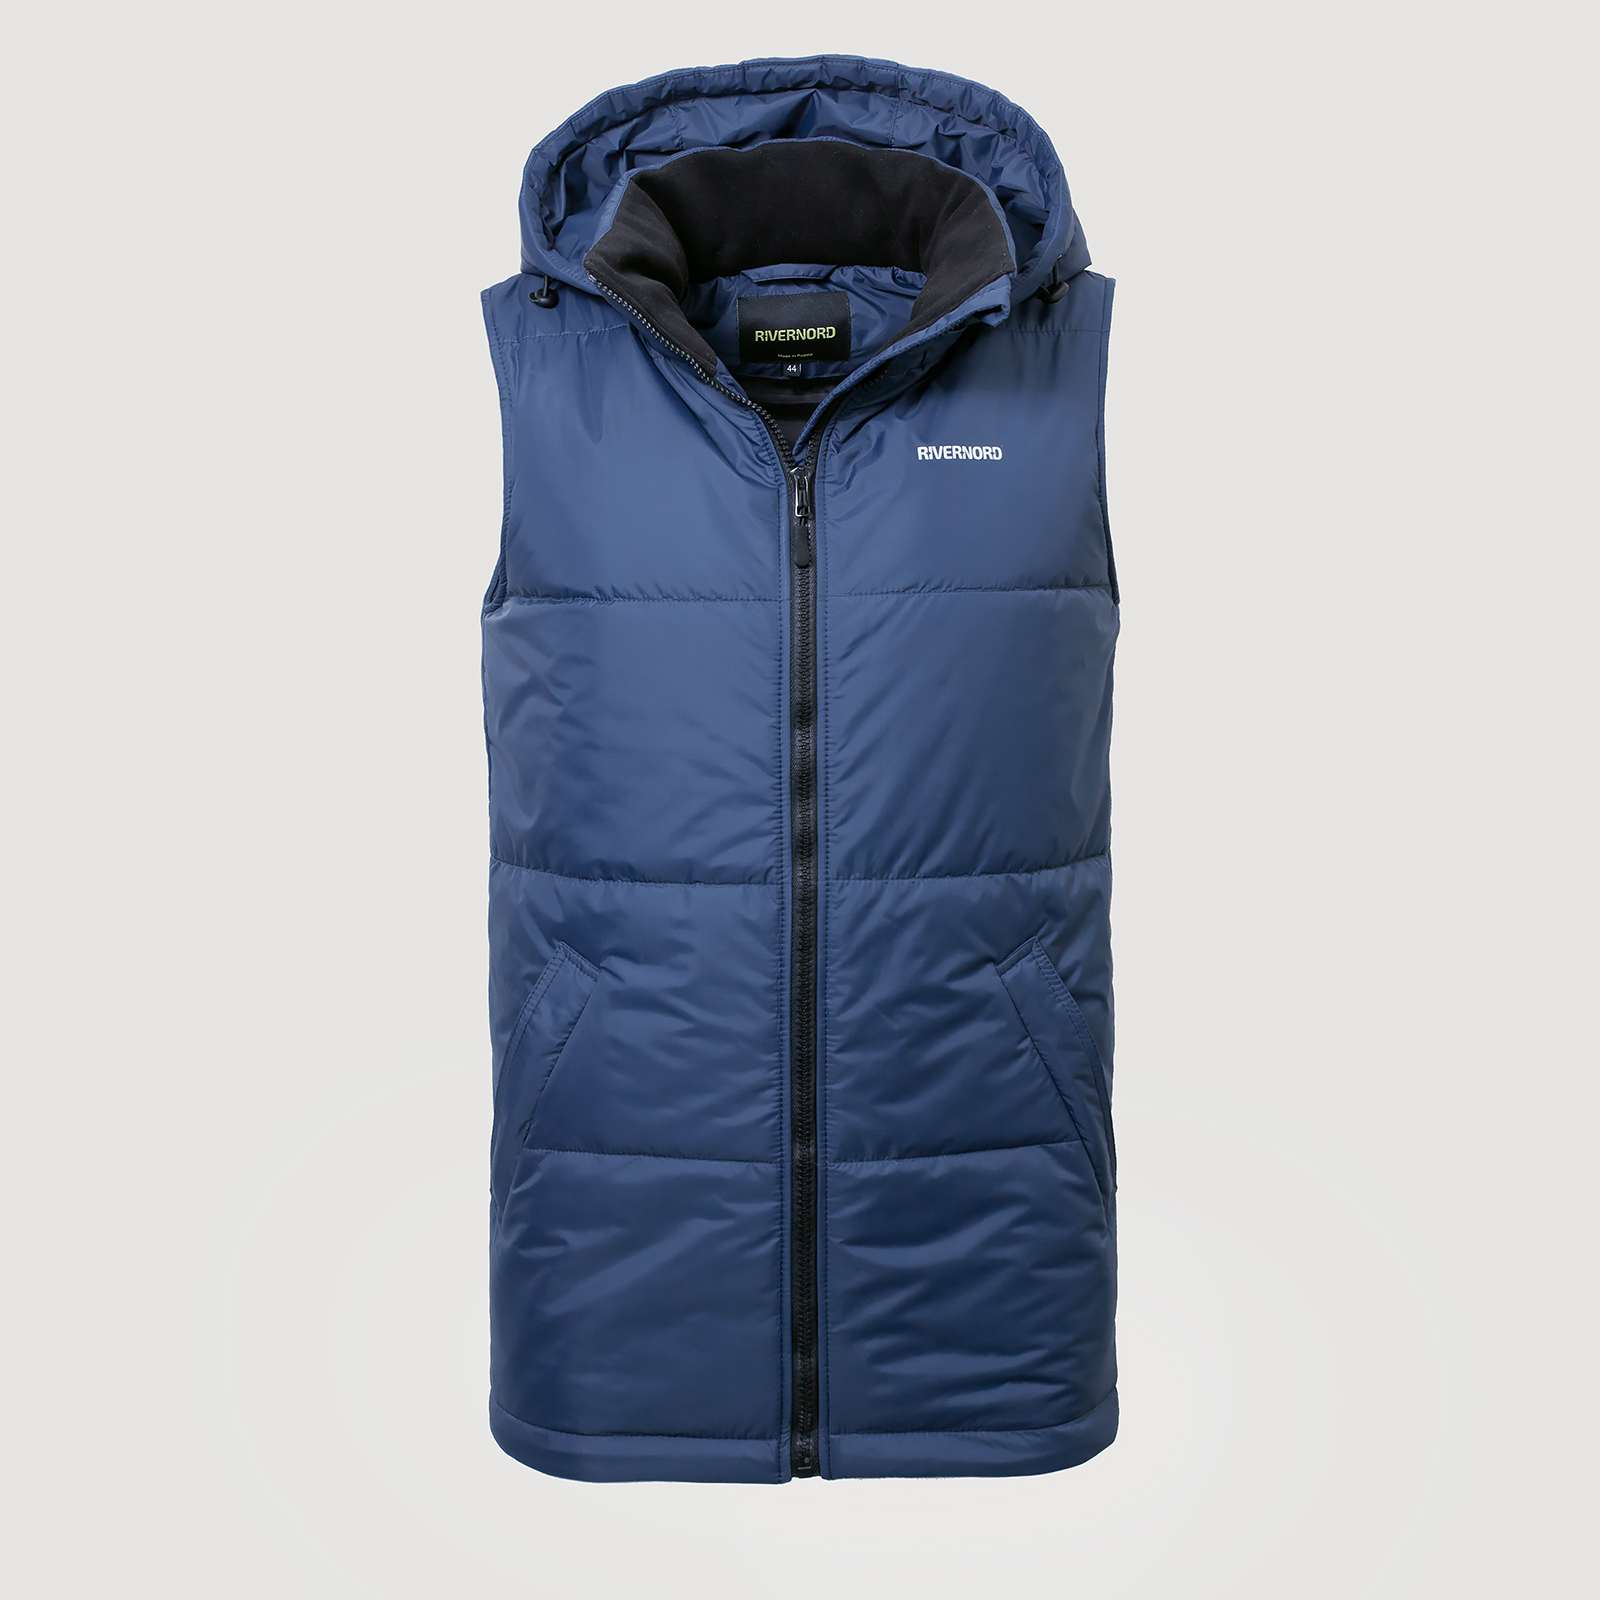 Мужской утепленный жилет Classic Winter Vest Original цвет темно-синий